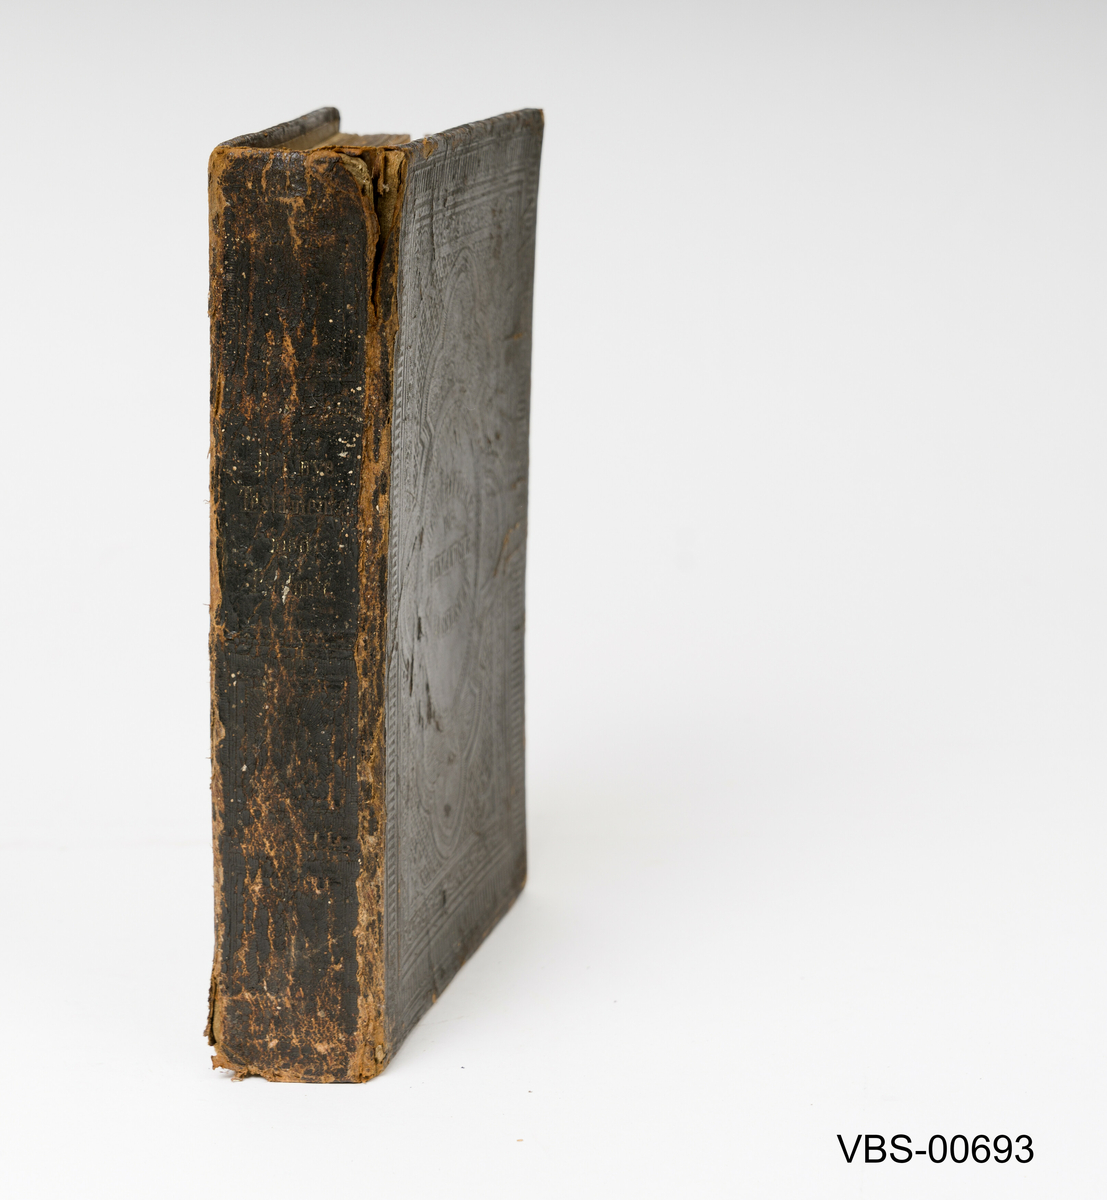 Bok, Det Nye Testamentet  innbundet med brunt skinn og dekor inngravert på skinnet.
Tykt i Christiania hos U Grøndahl, 1872.